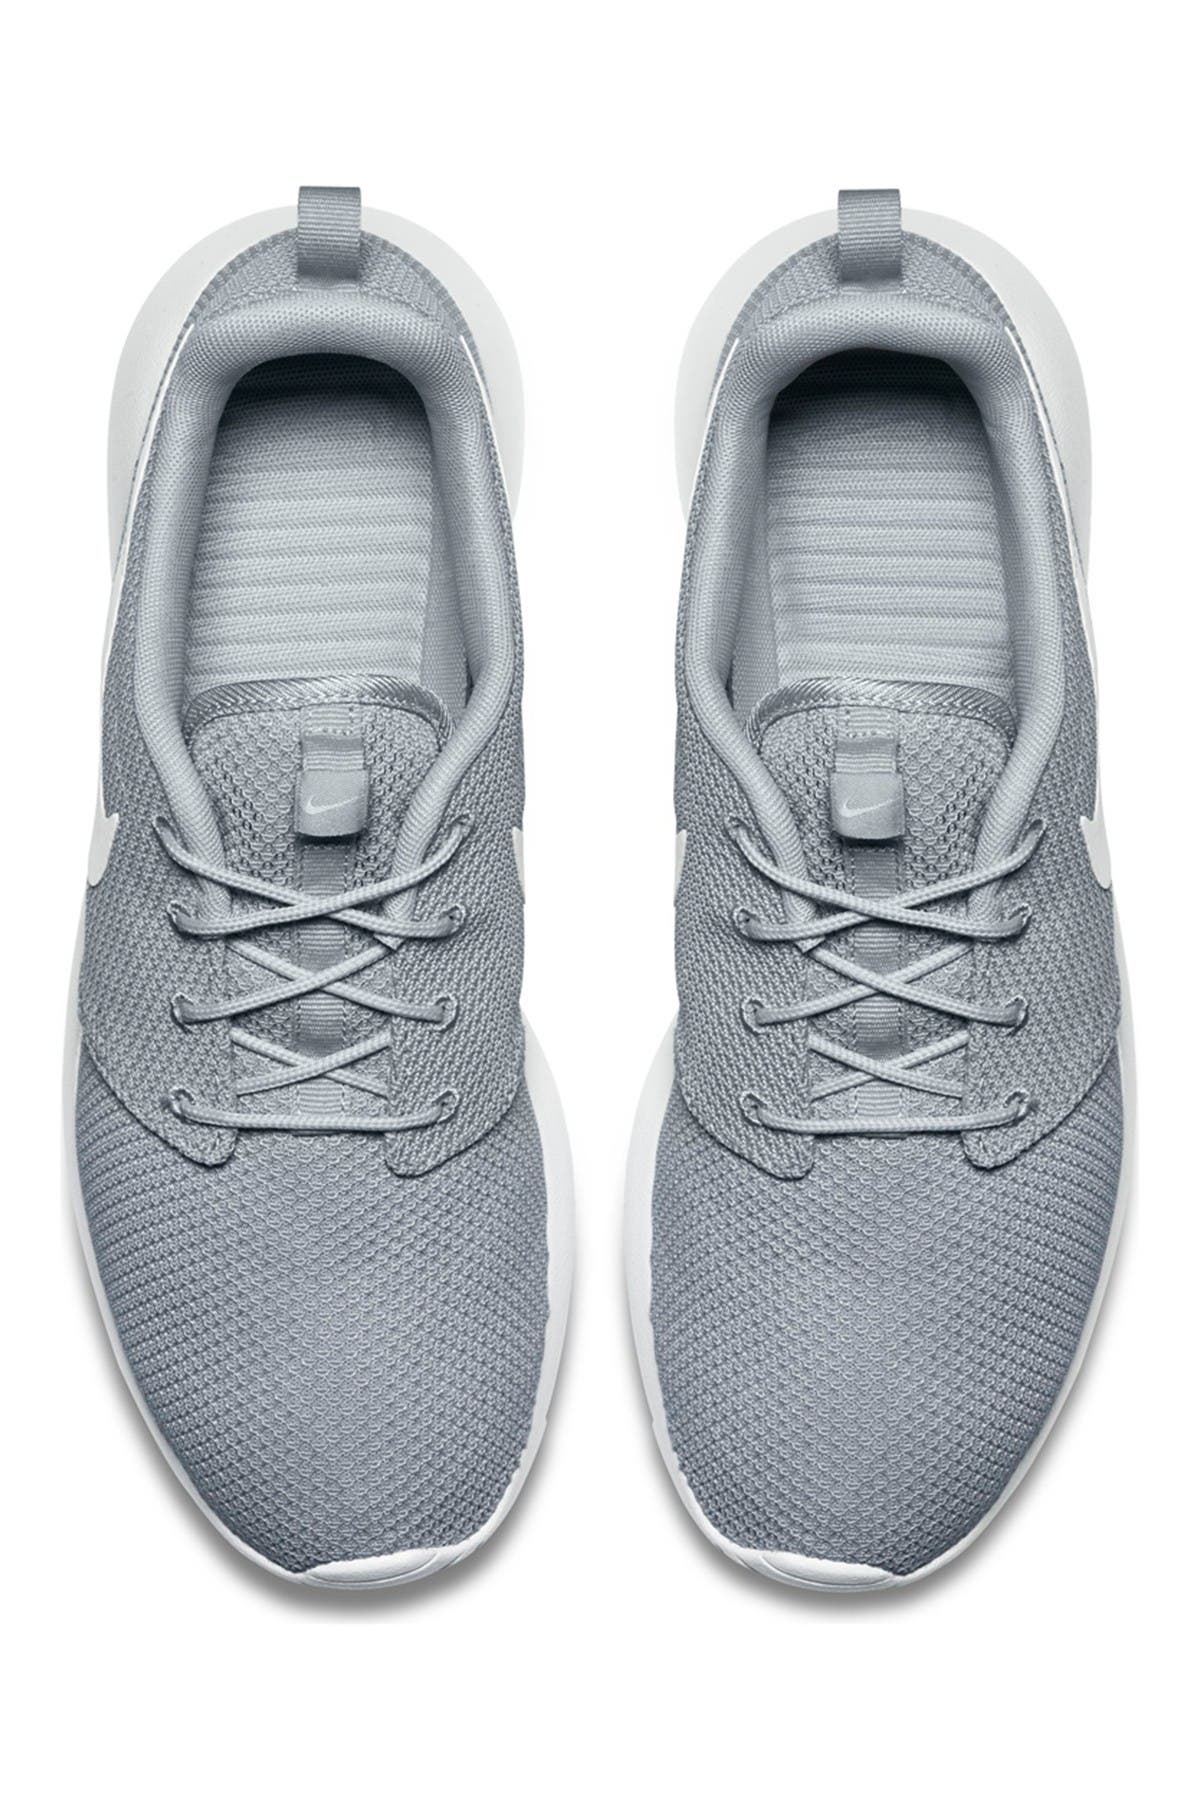 Nike | Roshe One Running Shoe 